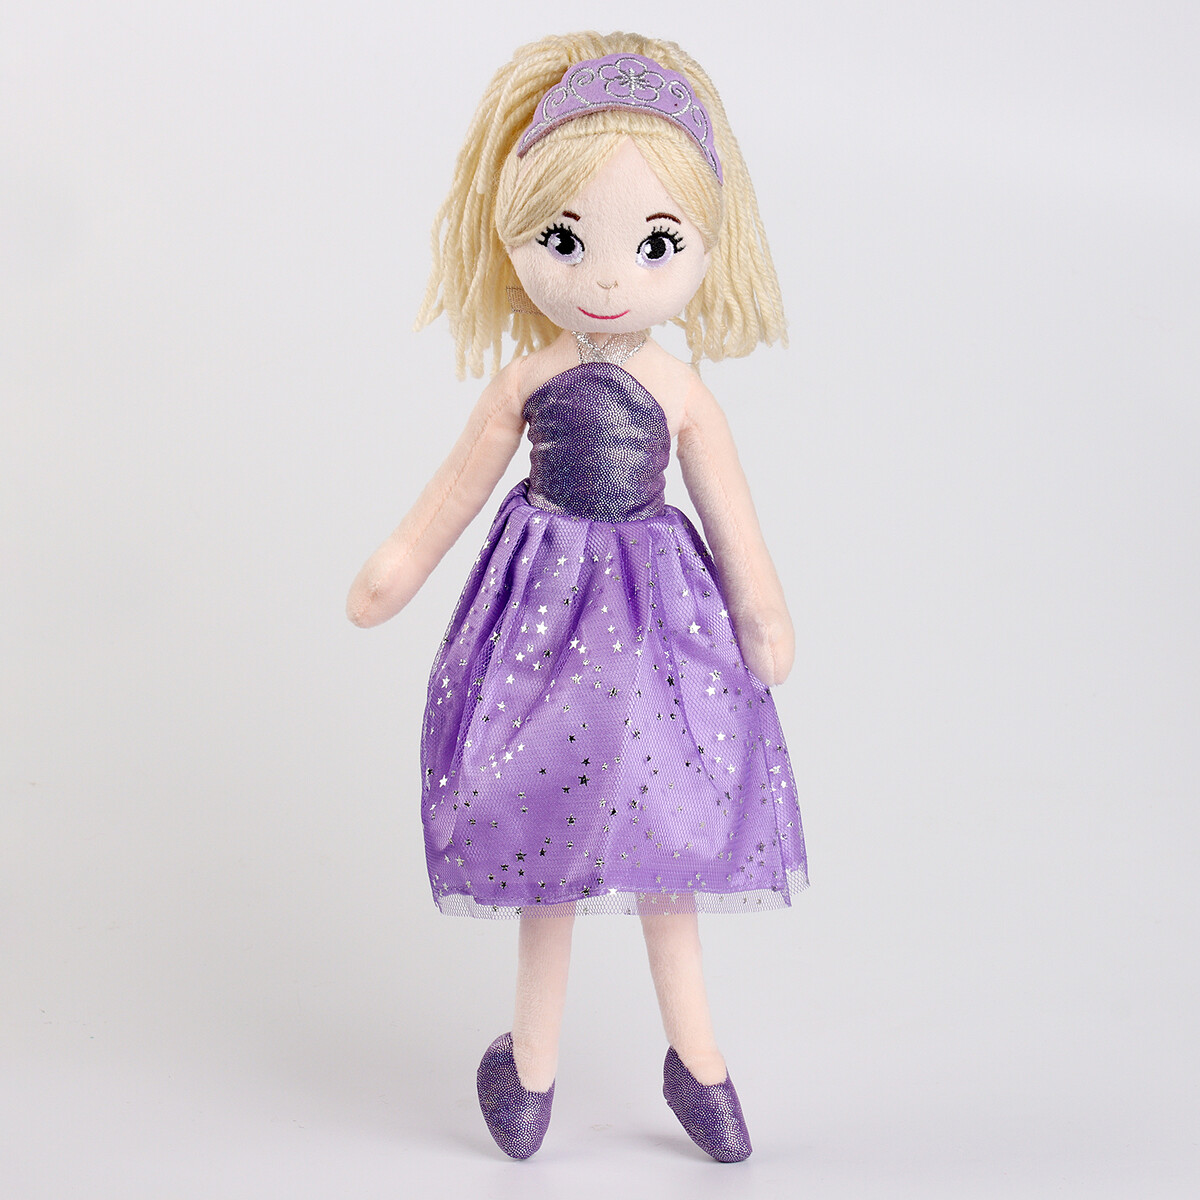 Мягкая игрушка платье в фиолетовом е с рисунком ромашек для девочек